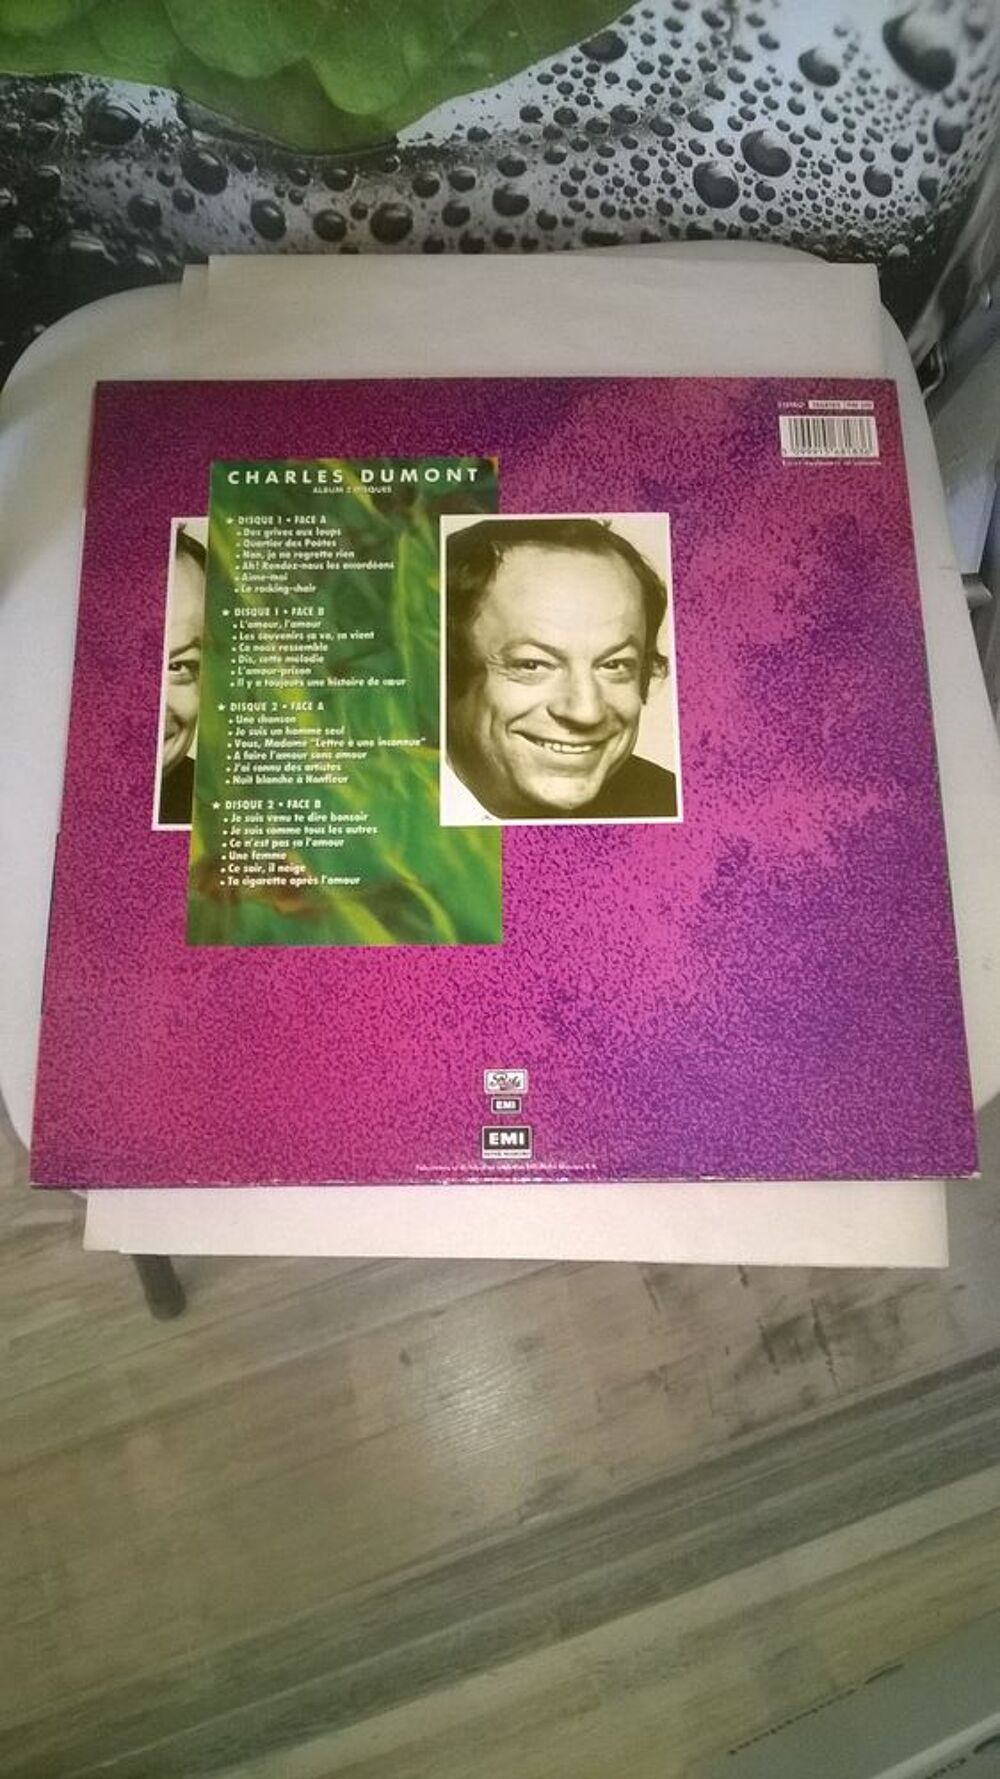 Vinyle Charles Dumont
Enregistrements Originaux
1986
Exce CD et vinyles